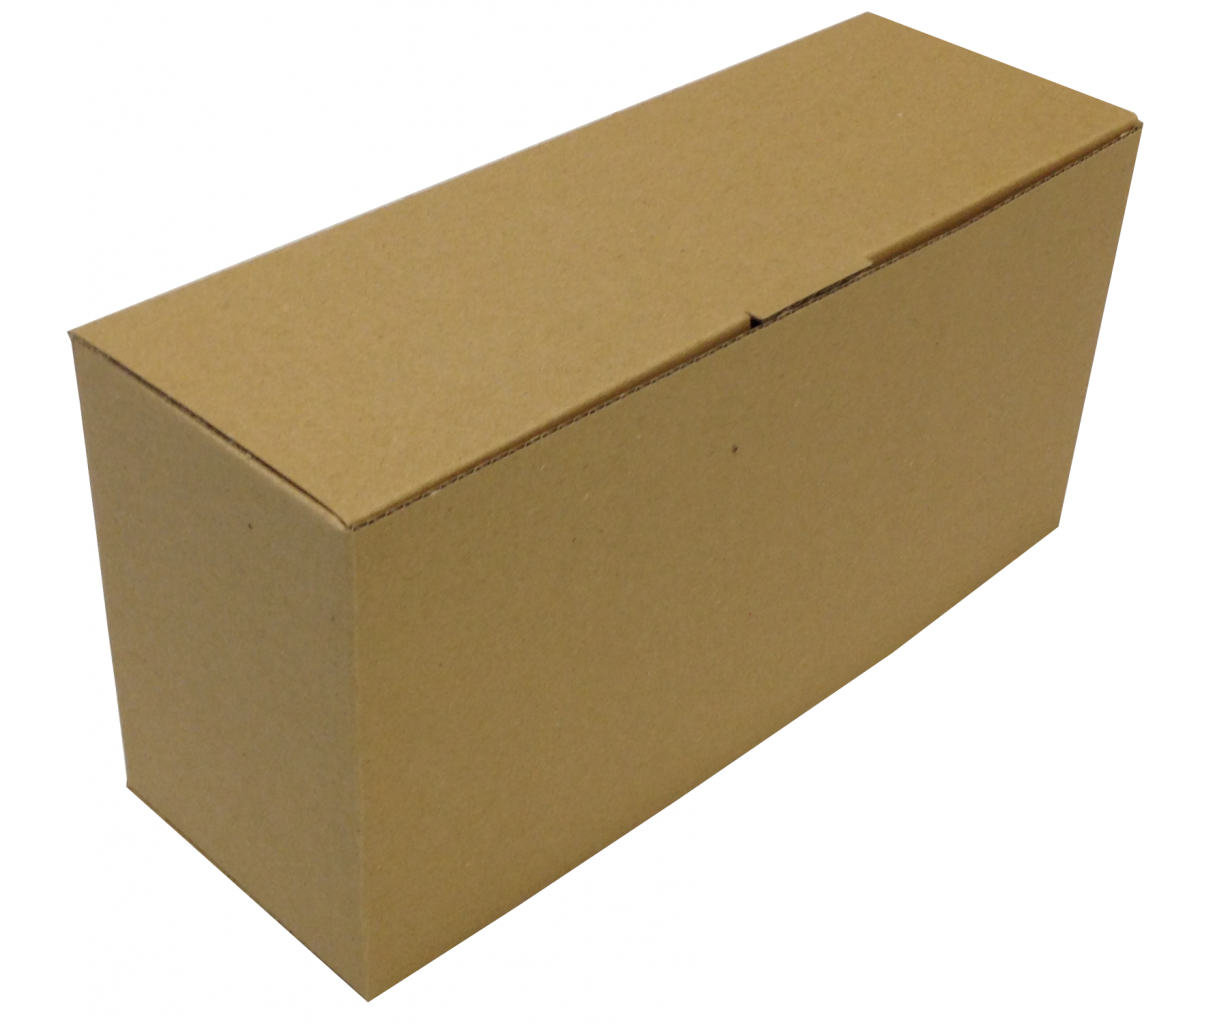 Közepes méretű önzáró tároló doboz (210x70x101 mm) Közepes méretű, felnyitható tetejű önzáródó hullámkarton tároló doboz

Felhasználás: 
Ajándéktárgyak, szerszámok, szerelvények, egyéb kisméretű tárgyak tárolására alkalmas közepes méretű önzáródó hullámkarton tároló doboz.

Méret: 210 x 70 x 101 mm - hullámkarton tároló doboz

Anyag: mikrohullám karton papír
Színek: 
alap: barna, fehér
színes: bordó, fekete, kék, zöld